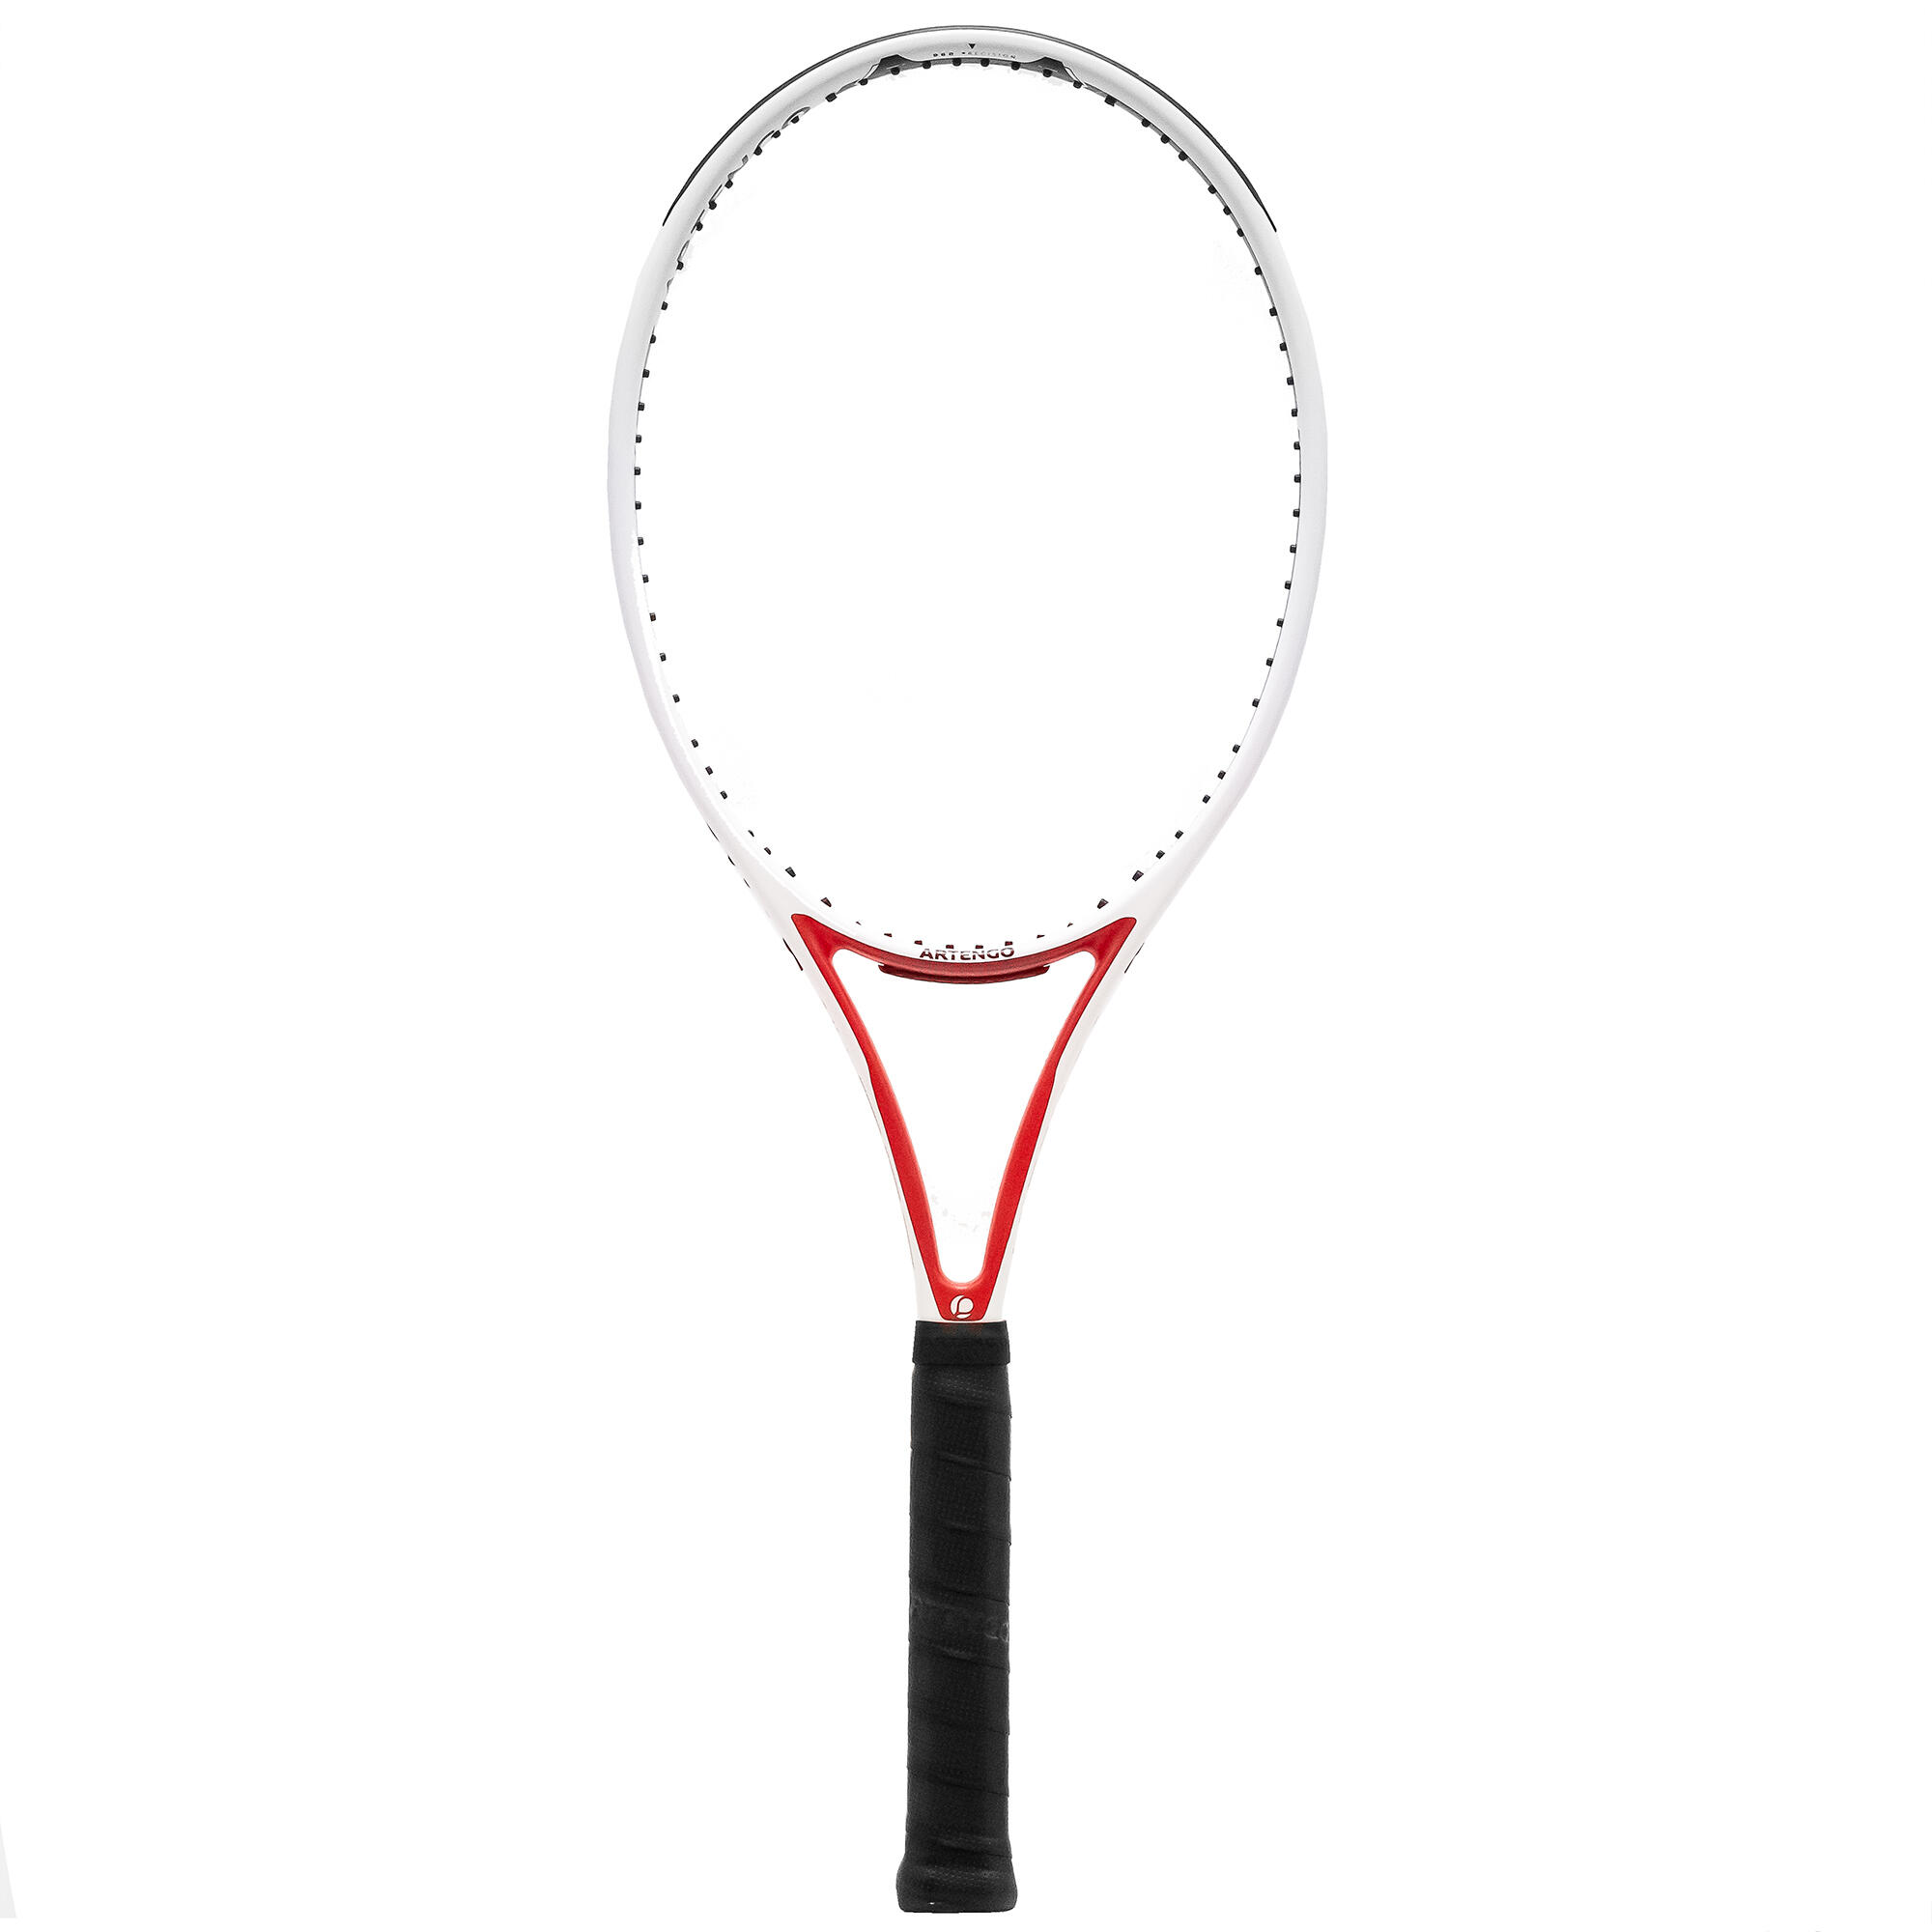 Rachetă Neracordată Tenis TR960 PRECISION Pro 16×19 Alb-Roșu Adulți La Oferta Online ARTENGO imagine La Oferta Online